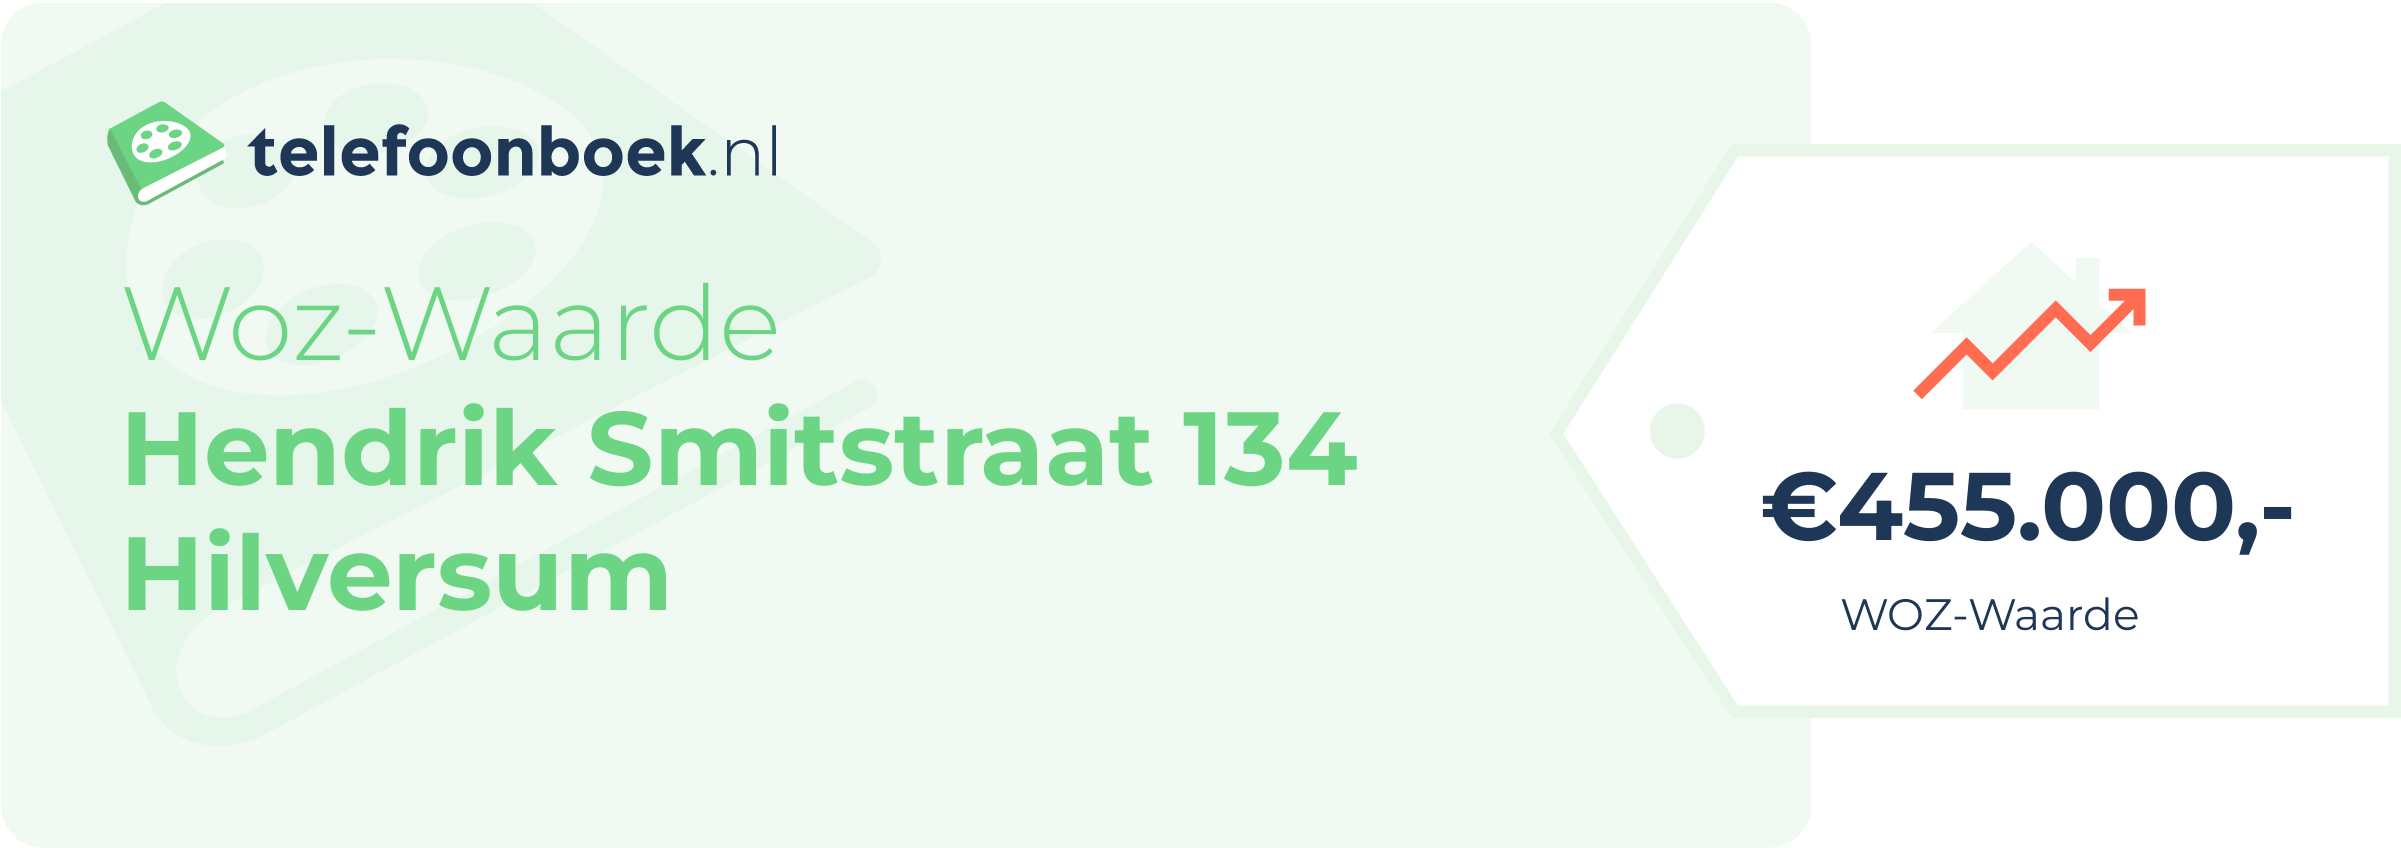 WOZ-waarde Hendrik Smitstraat 134 Hilversum